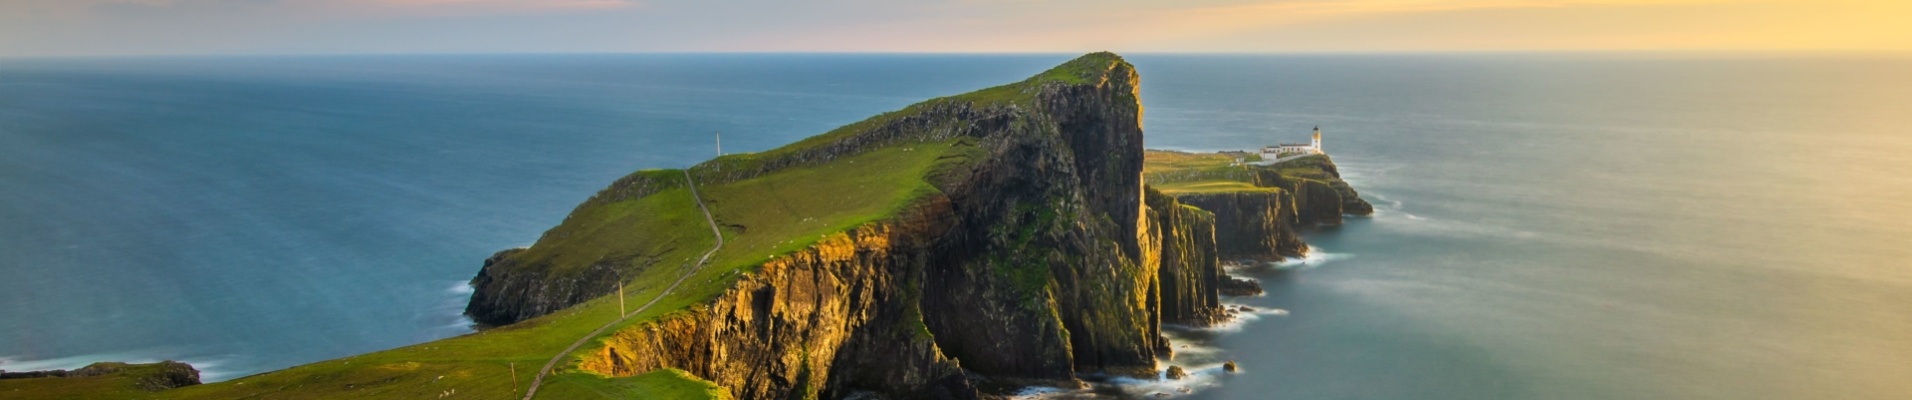 phare de Neist Point sur l'île de Skye